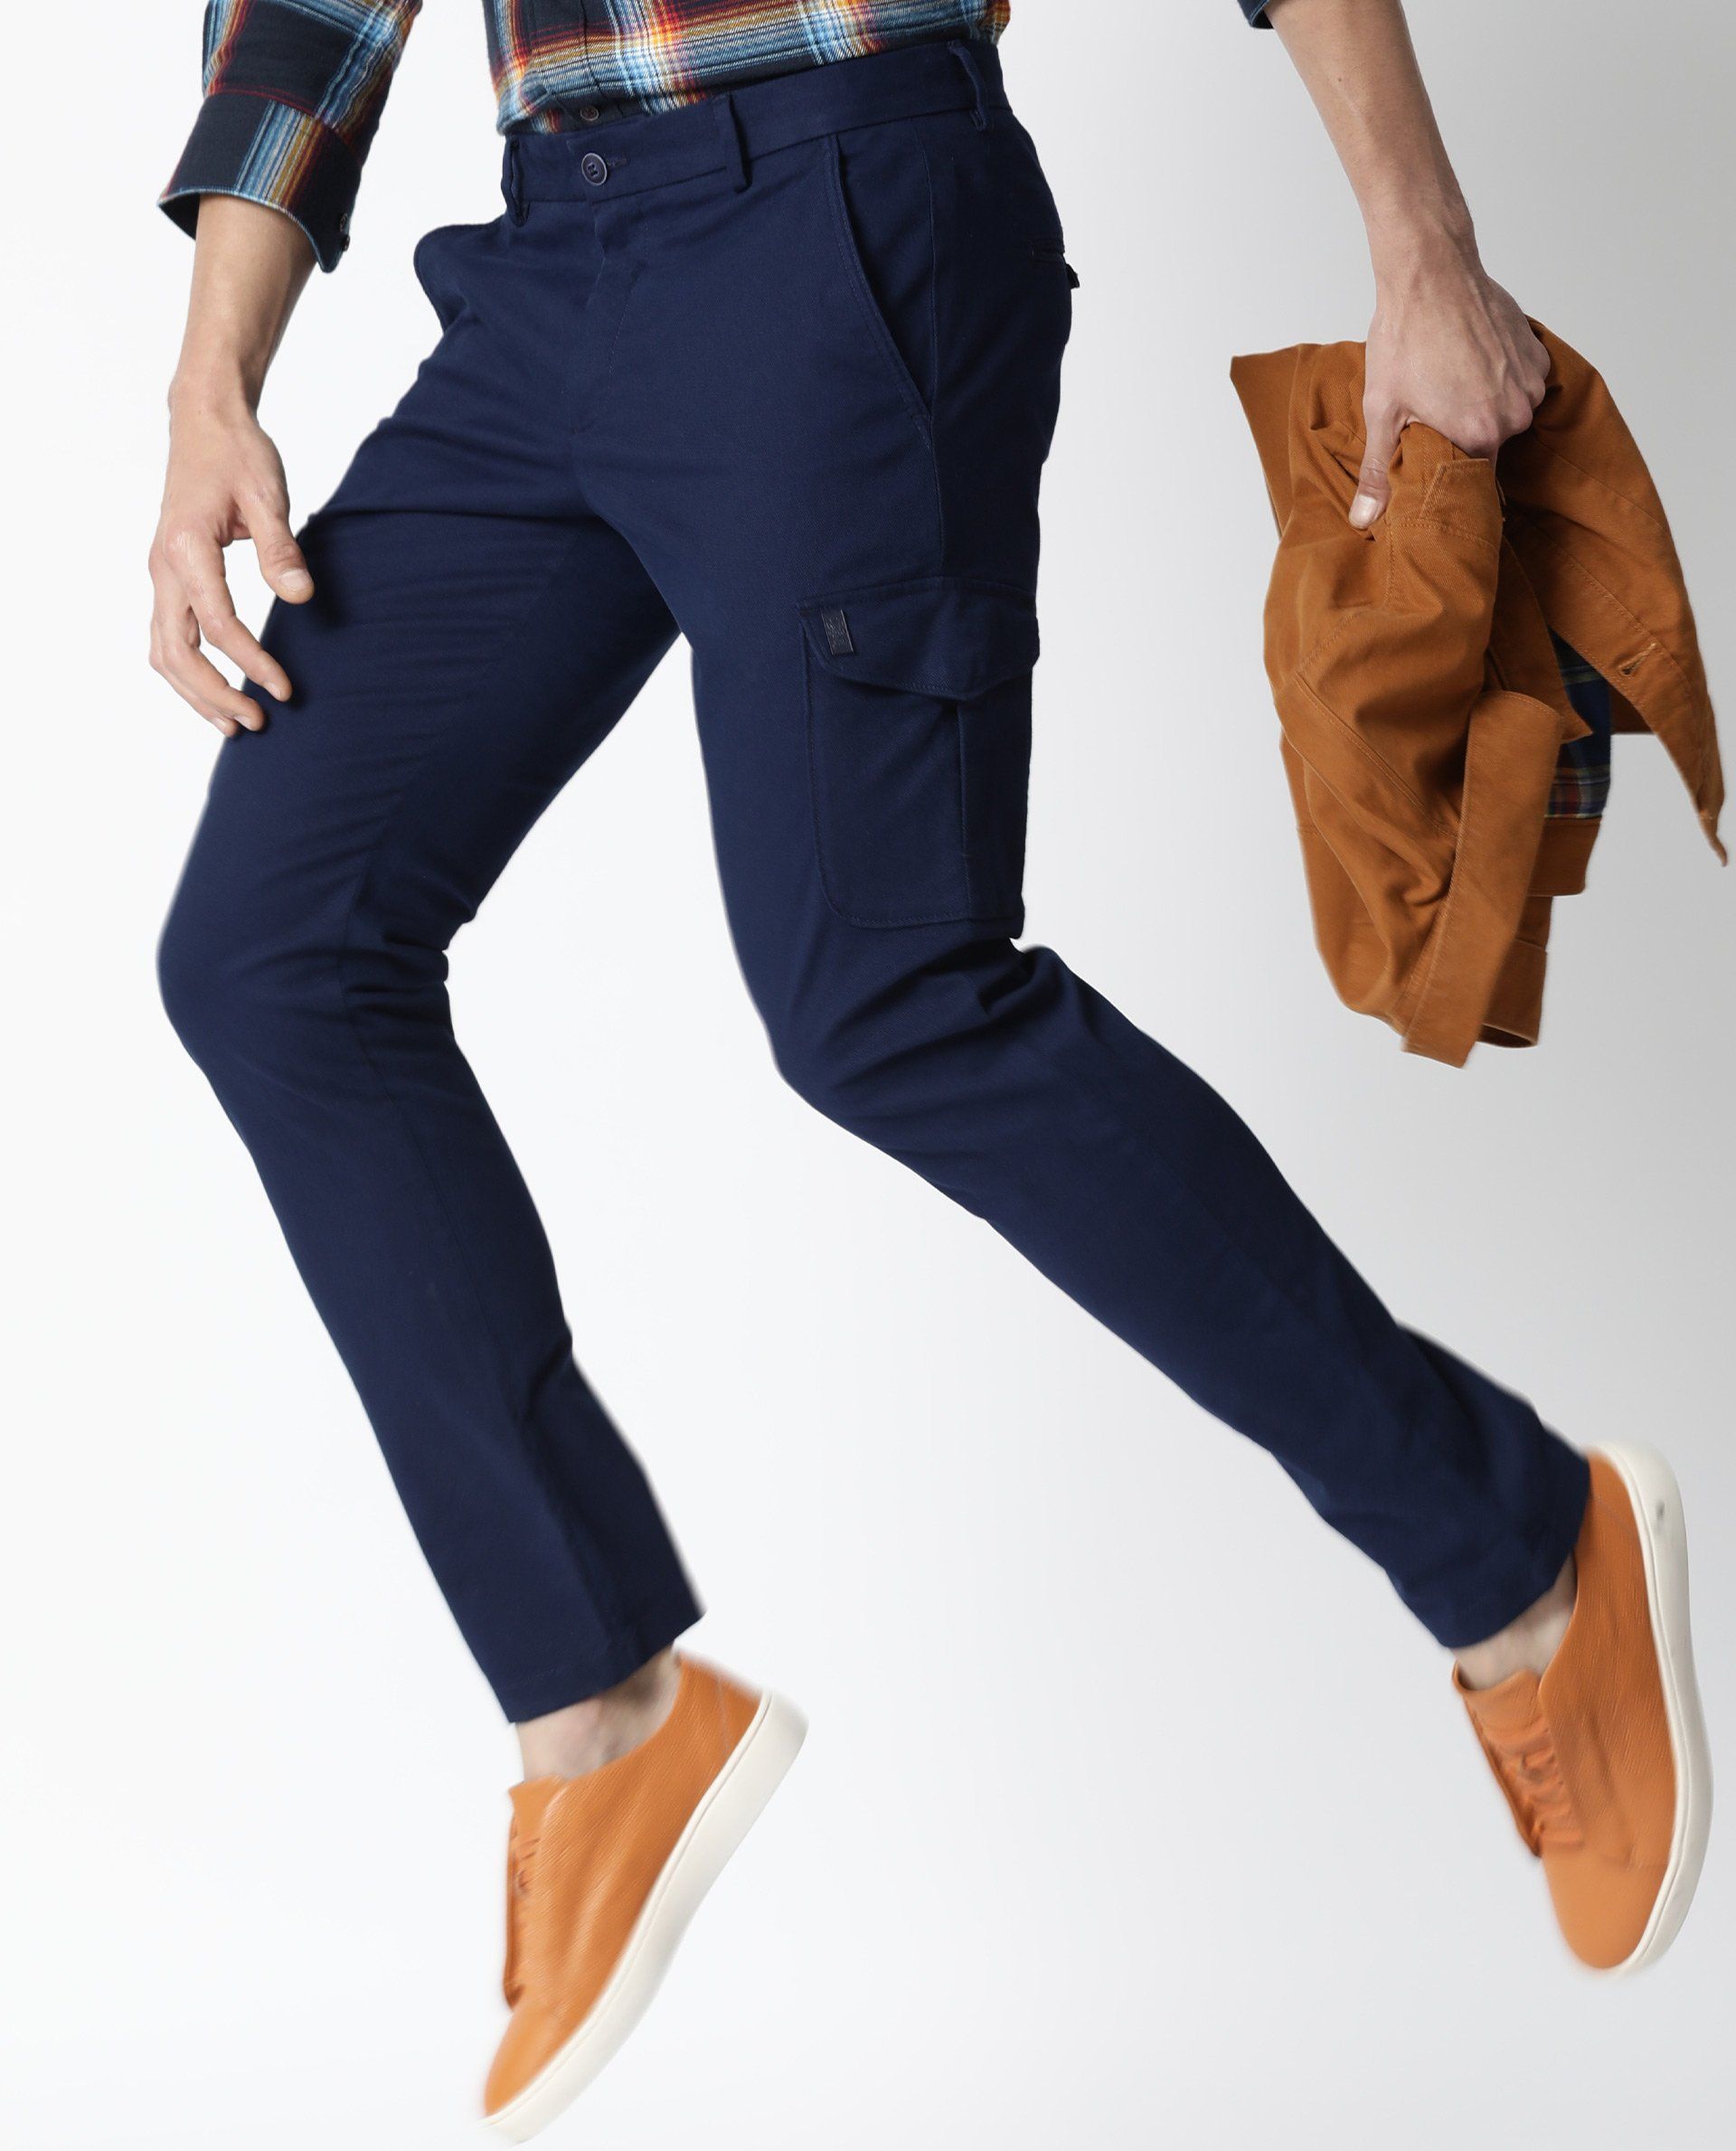 Buy Black Trousers  Pants for Men by ECKO UNLTD Online  Ajiocom